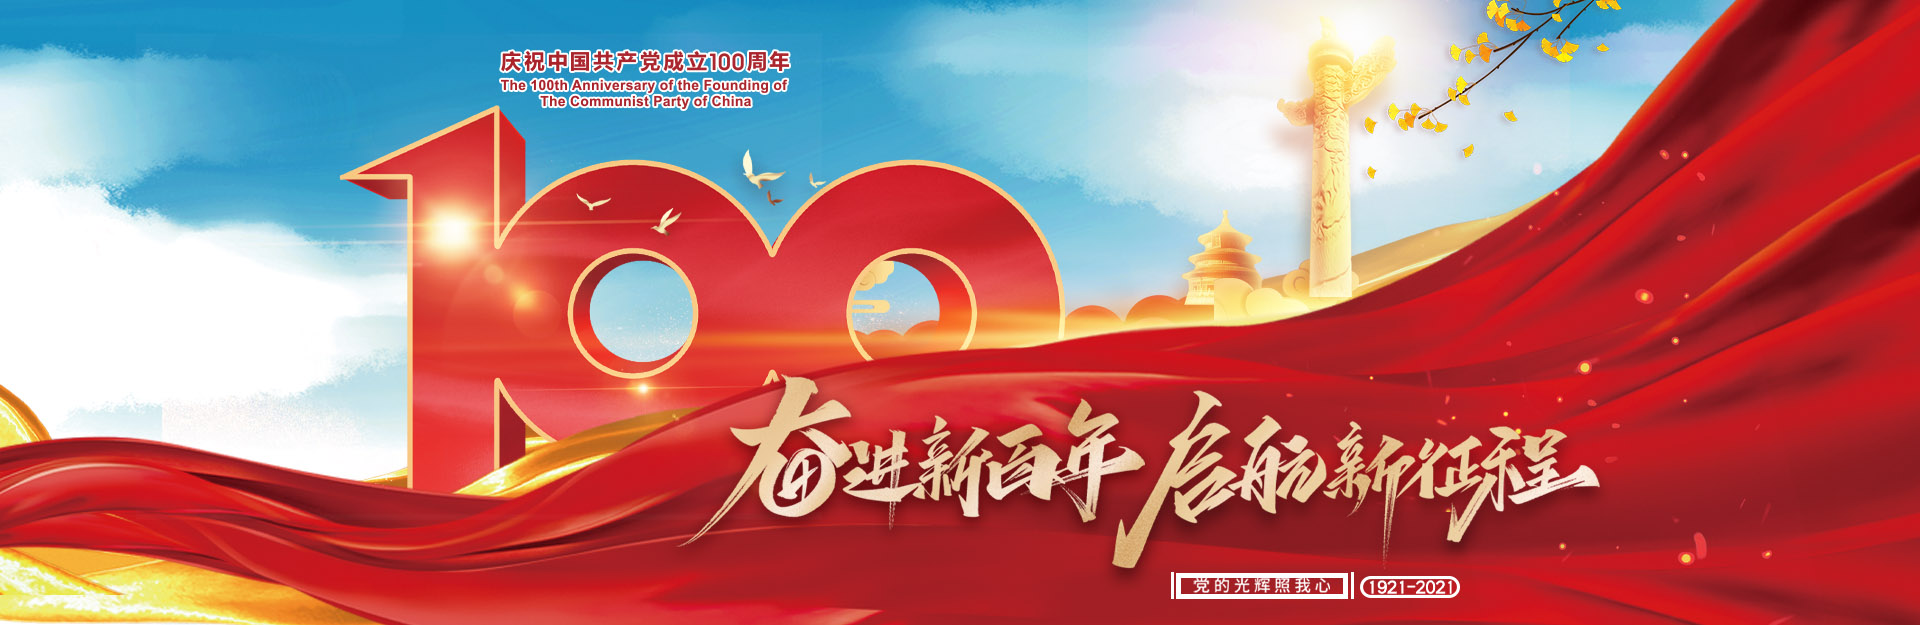 祝贺中国共产党100周年